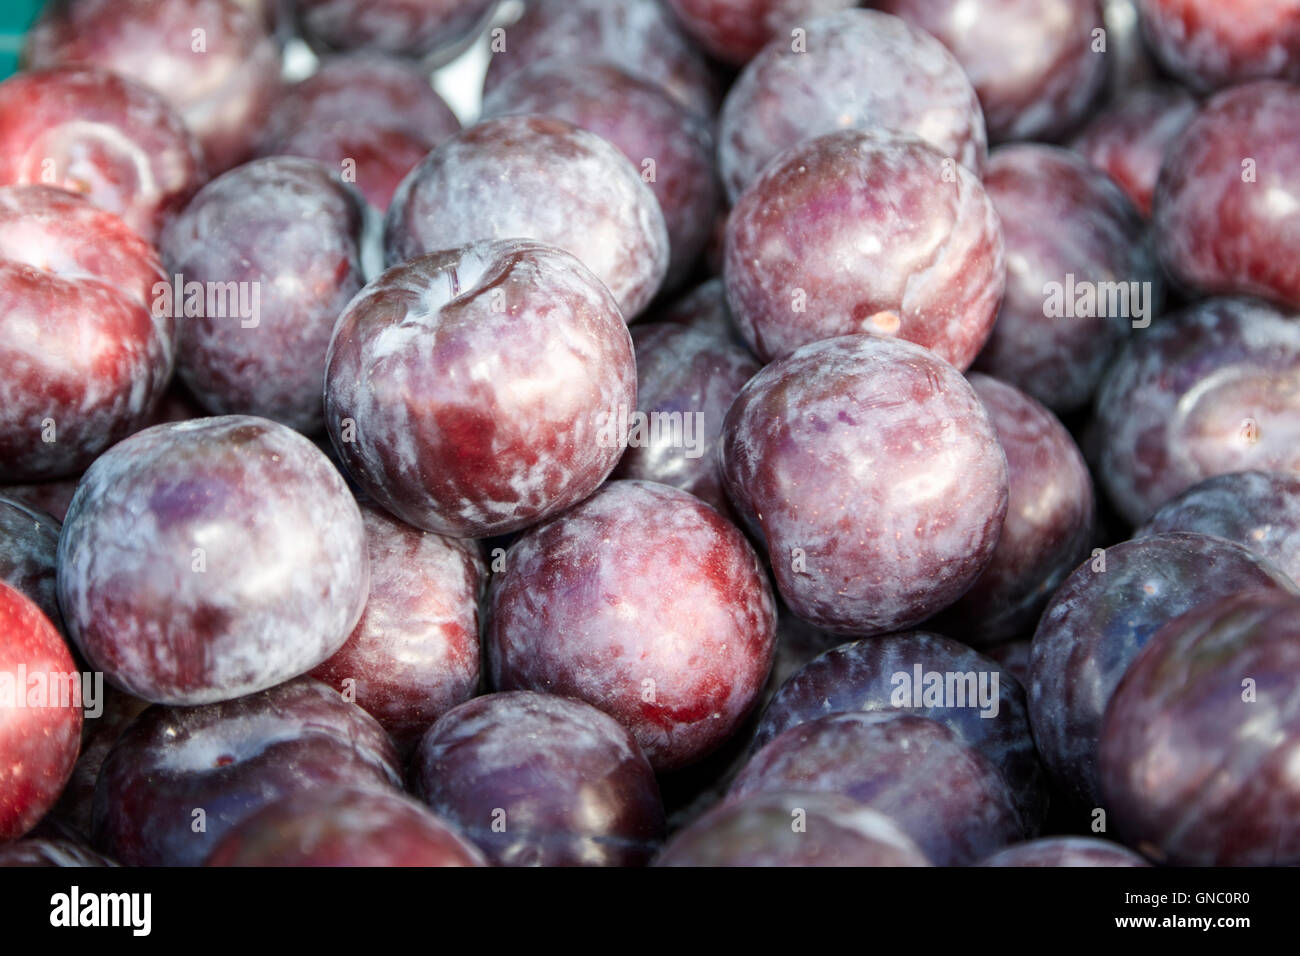 Prugne fresche sul display un fruttivendolo stallo alimentari nel Regno Unito Foto Stock